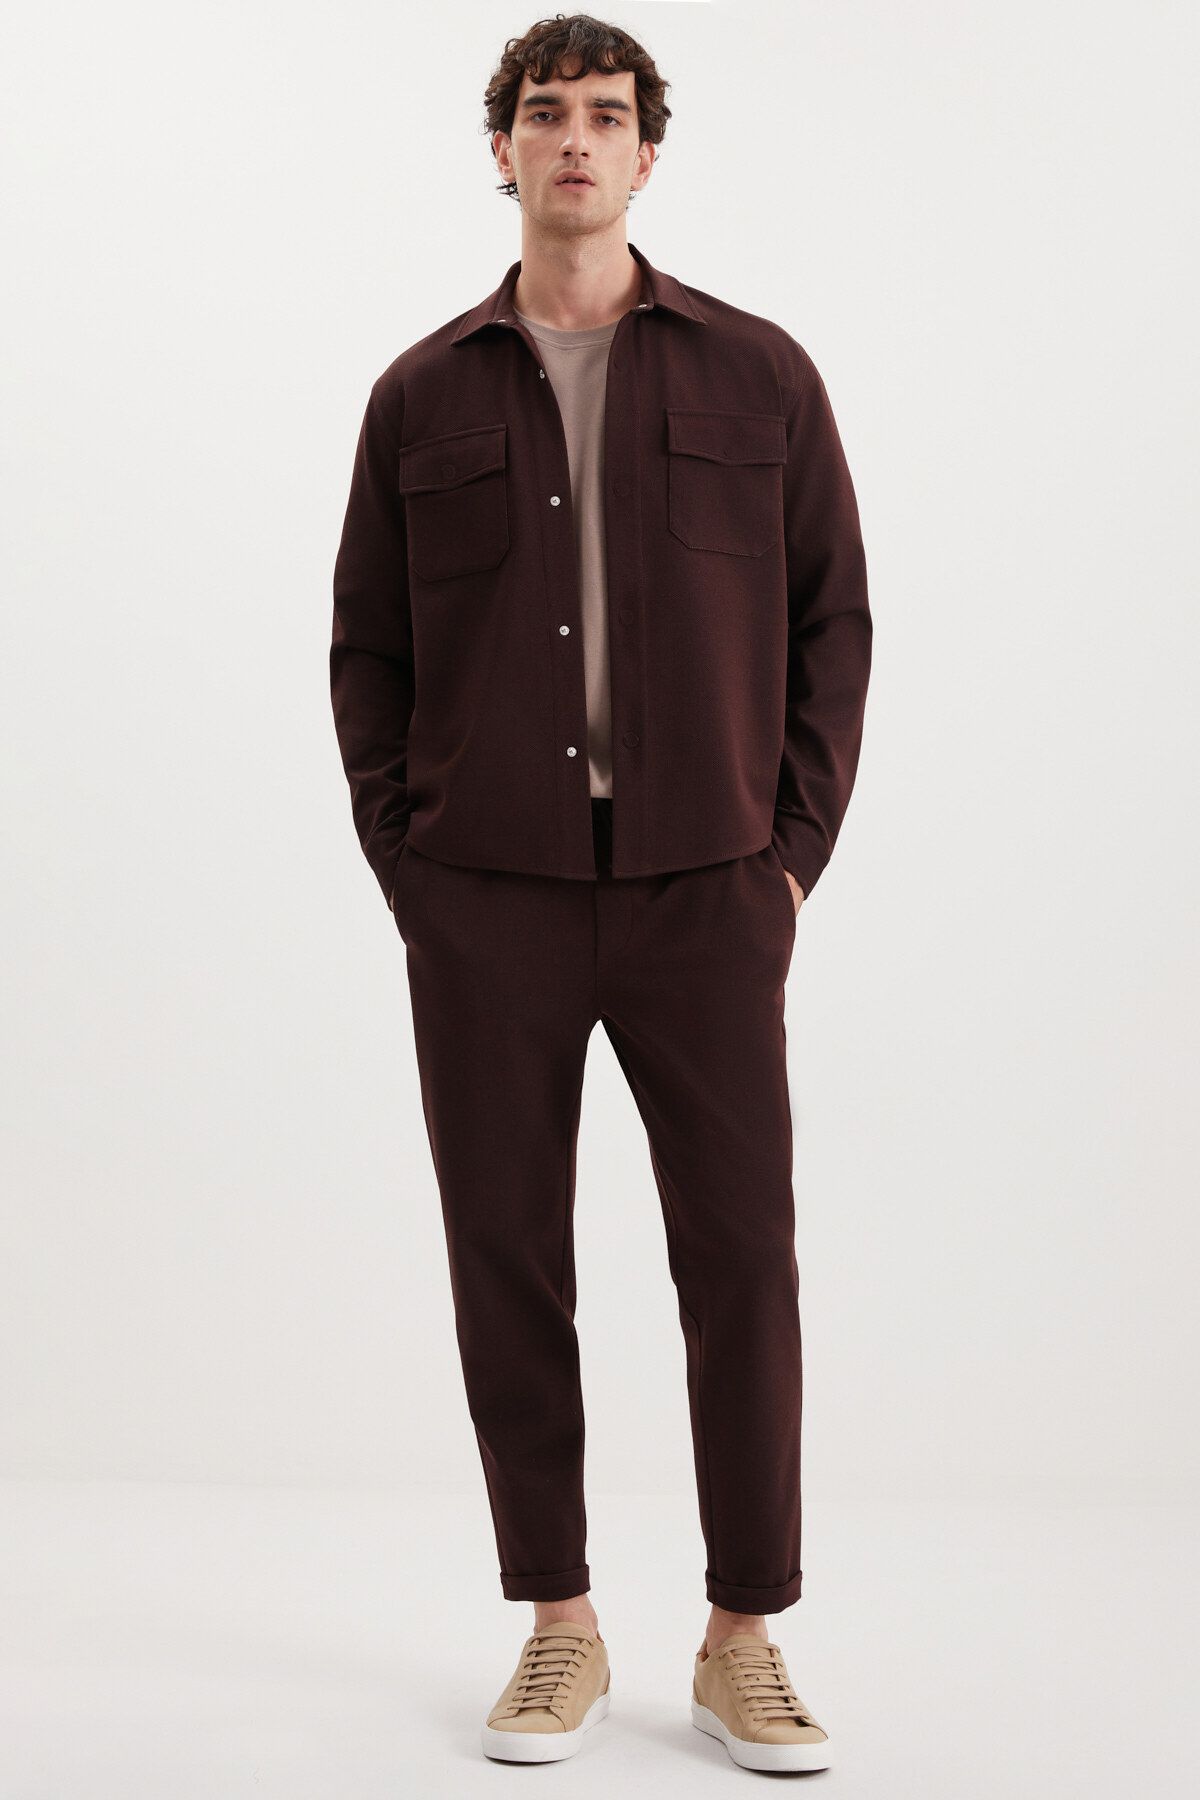 GRIMELANGE Walsh Erkek Pike Görünümlü Özel Kumaşlı Esnek Duble Paça Kordonlu Beli Lastikli Bordo Pantolon